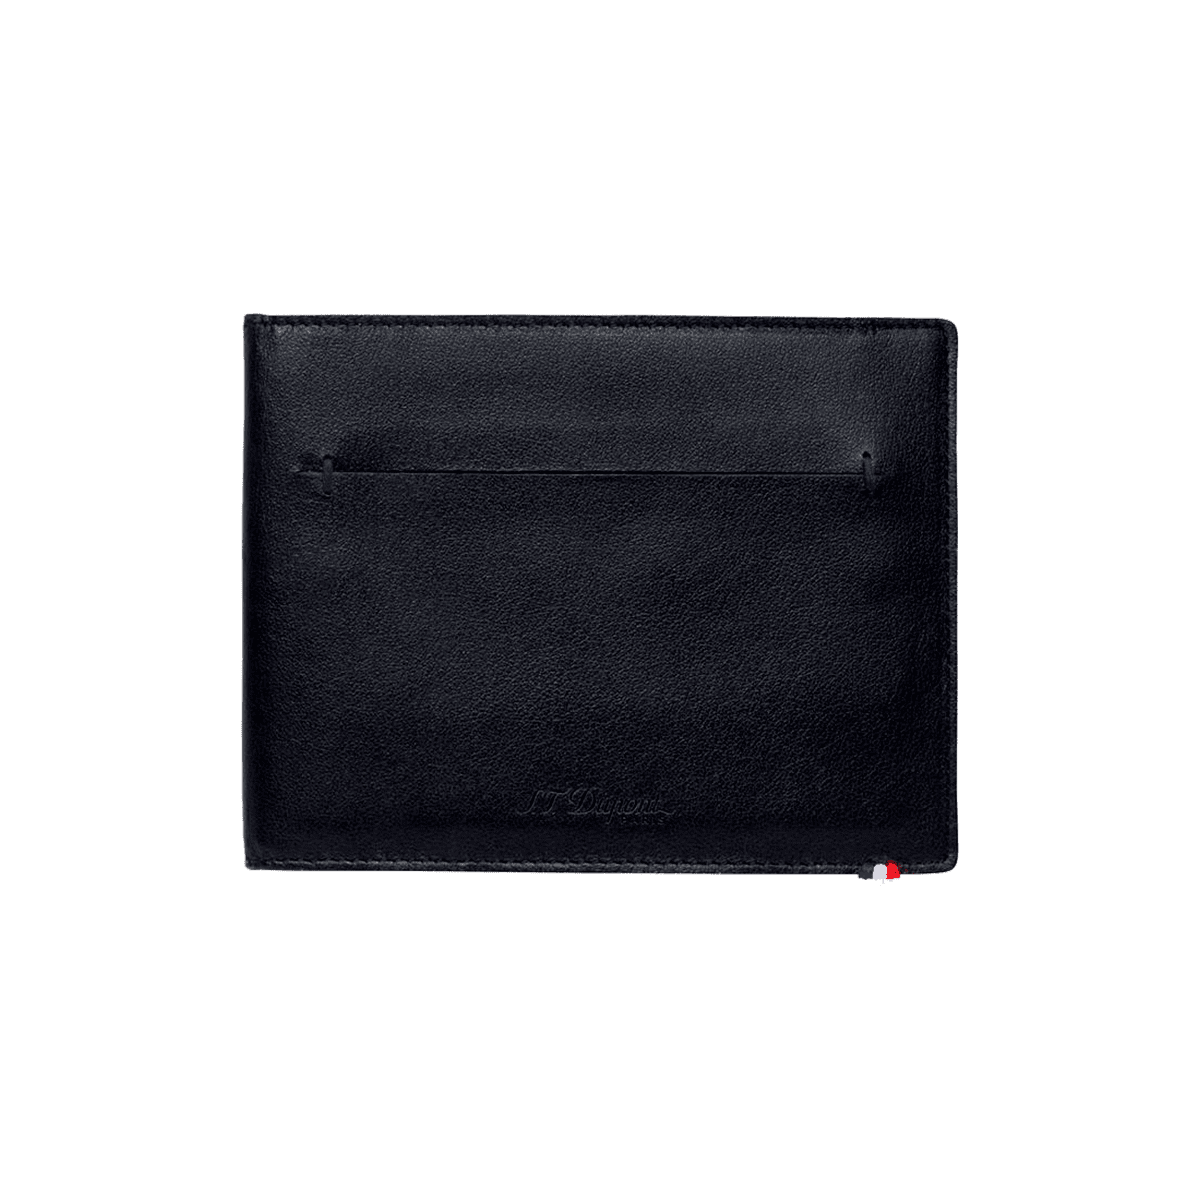 Портмоне Line D Slim 184000 Цвет Чёрный Гладкая кожа, семь отделений для кредитных карт | S.T. Dupont